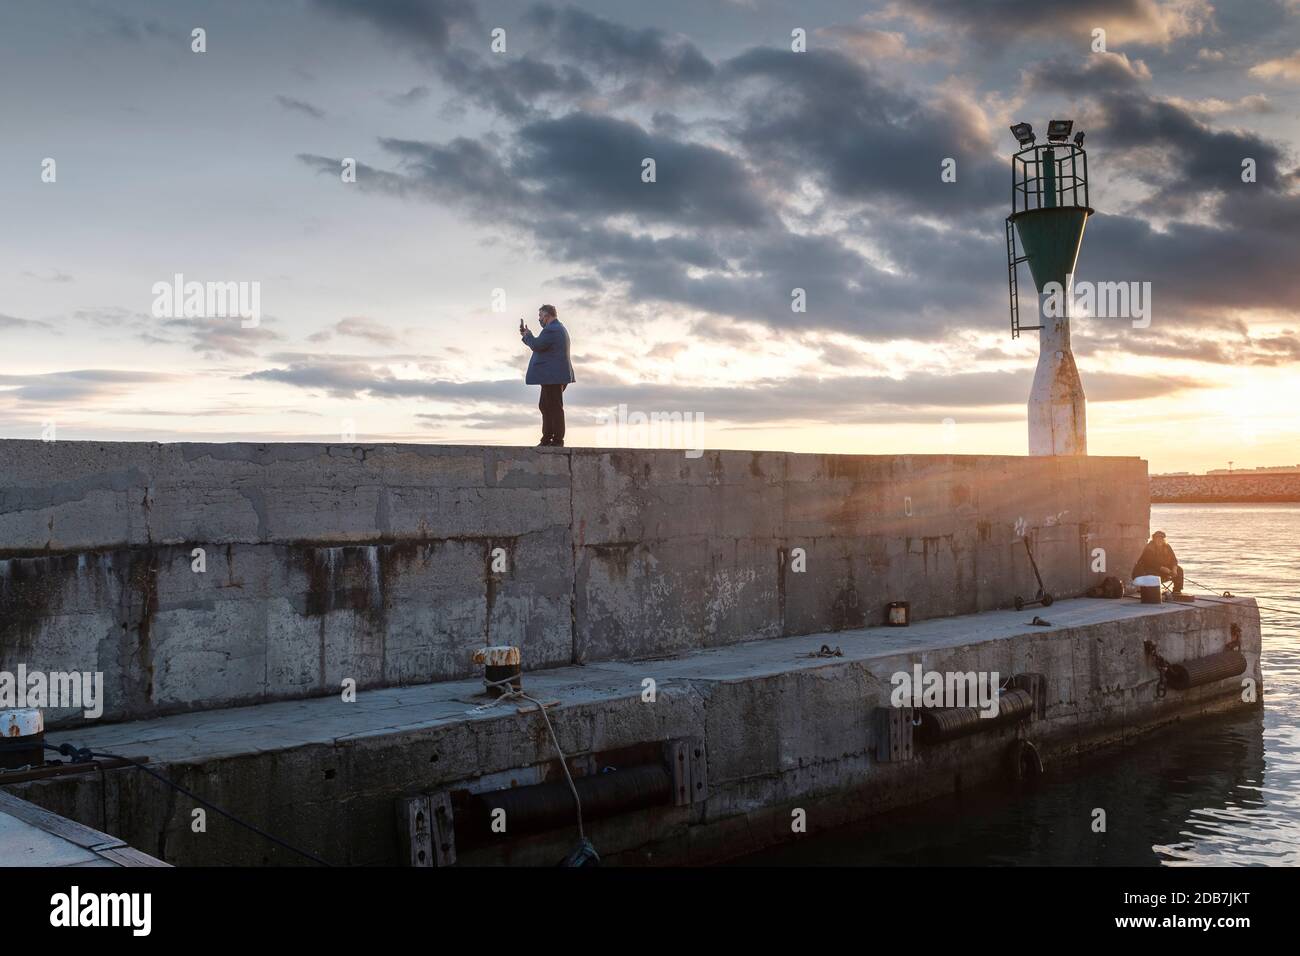 Mann mittleren Alters mit Gesichtsmaske, der Selfie-Fotos am Hafenpier während des Sonnenuntergangs macht, Burgas Harbour, Bulgarien Stockfoto